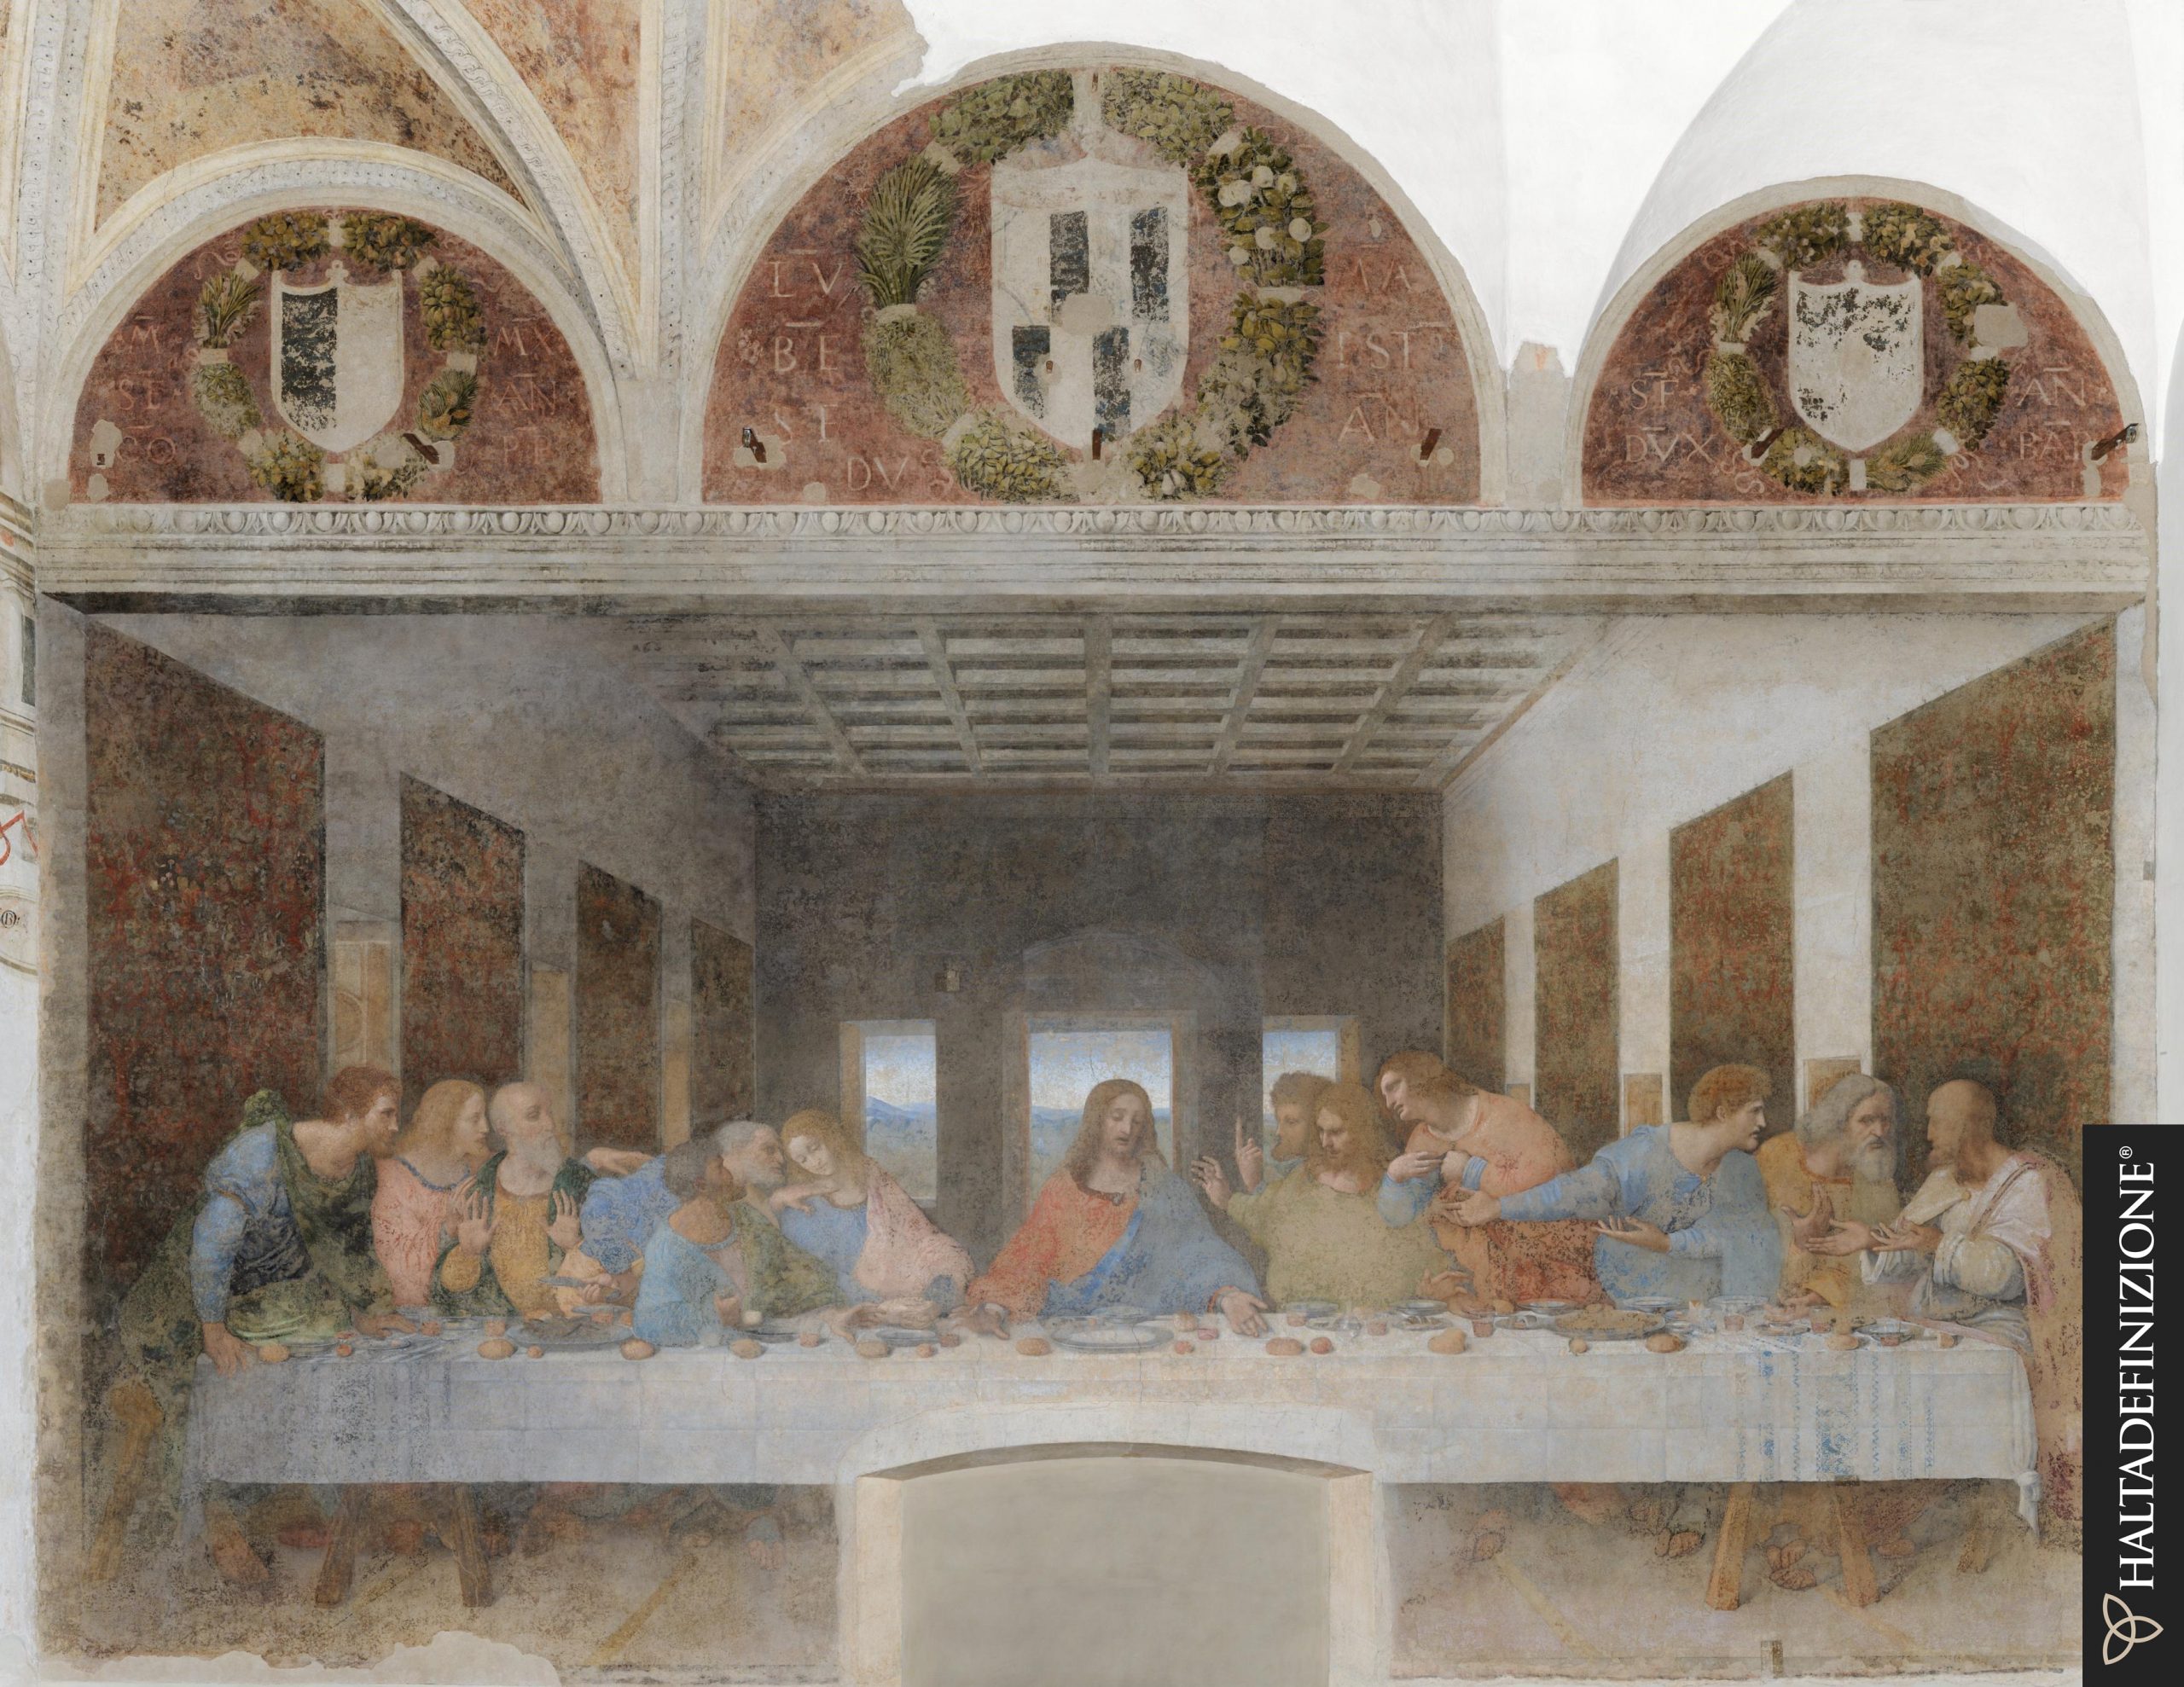 Portrait of the Last Supper by Leonardo da Vinci